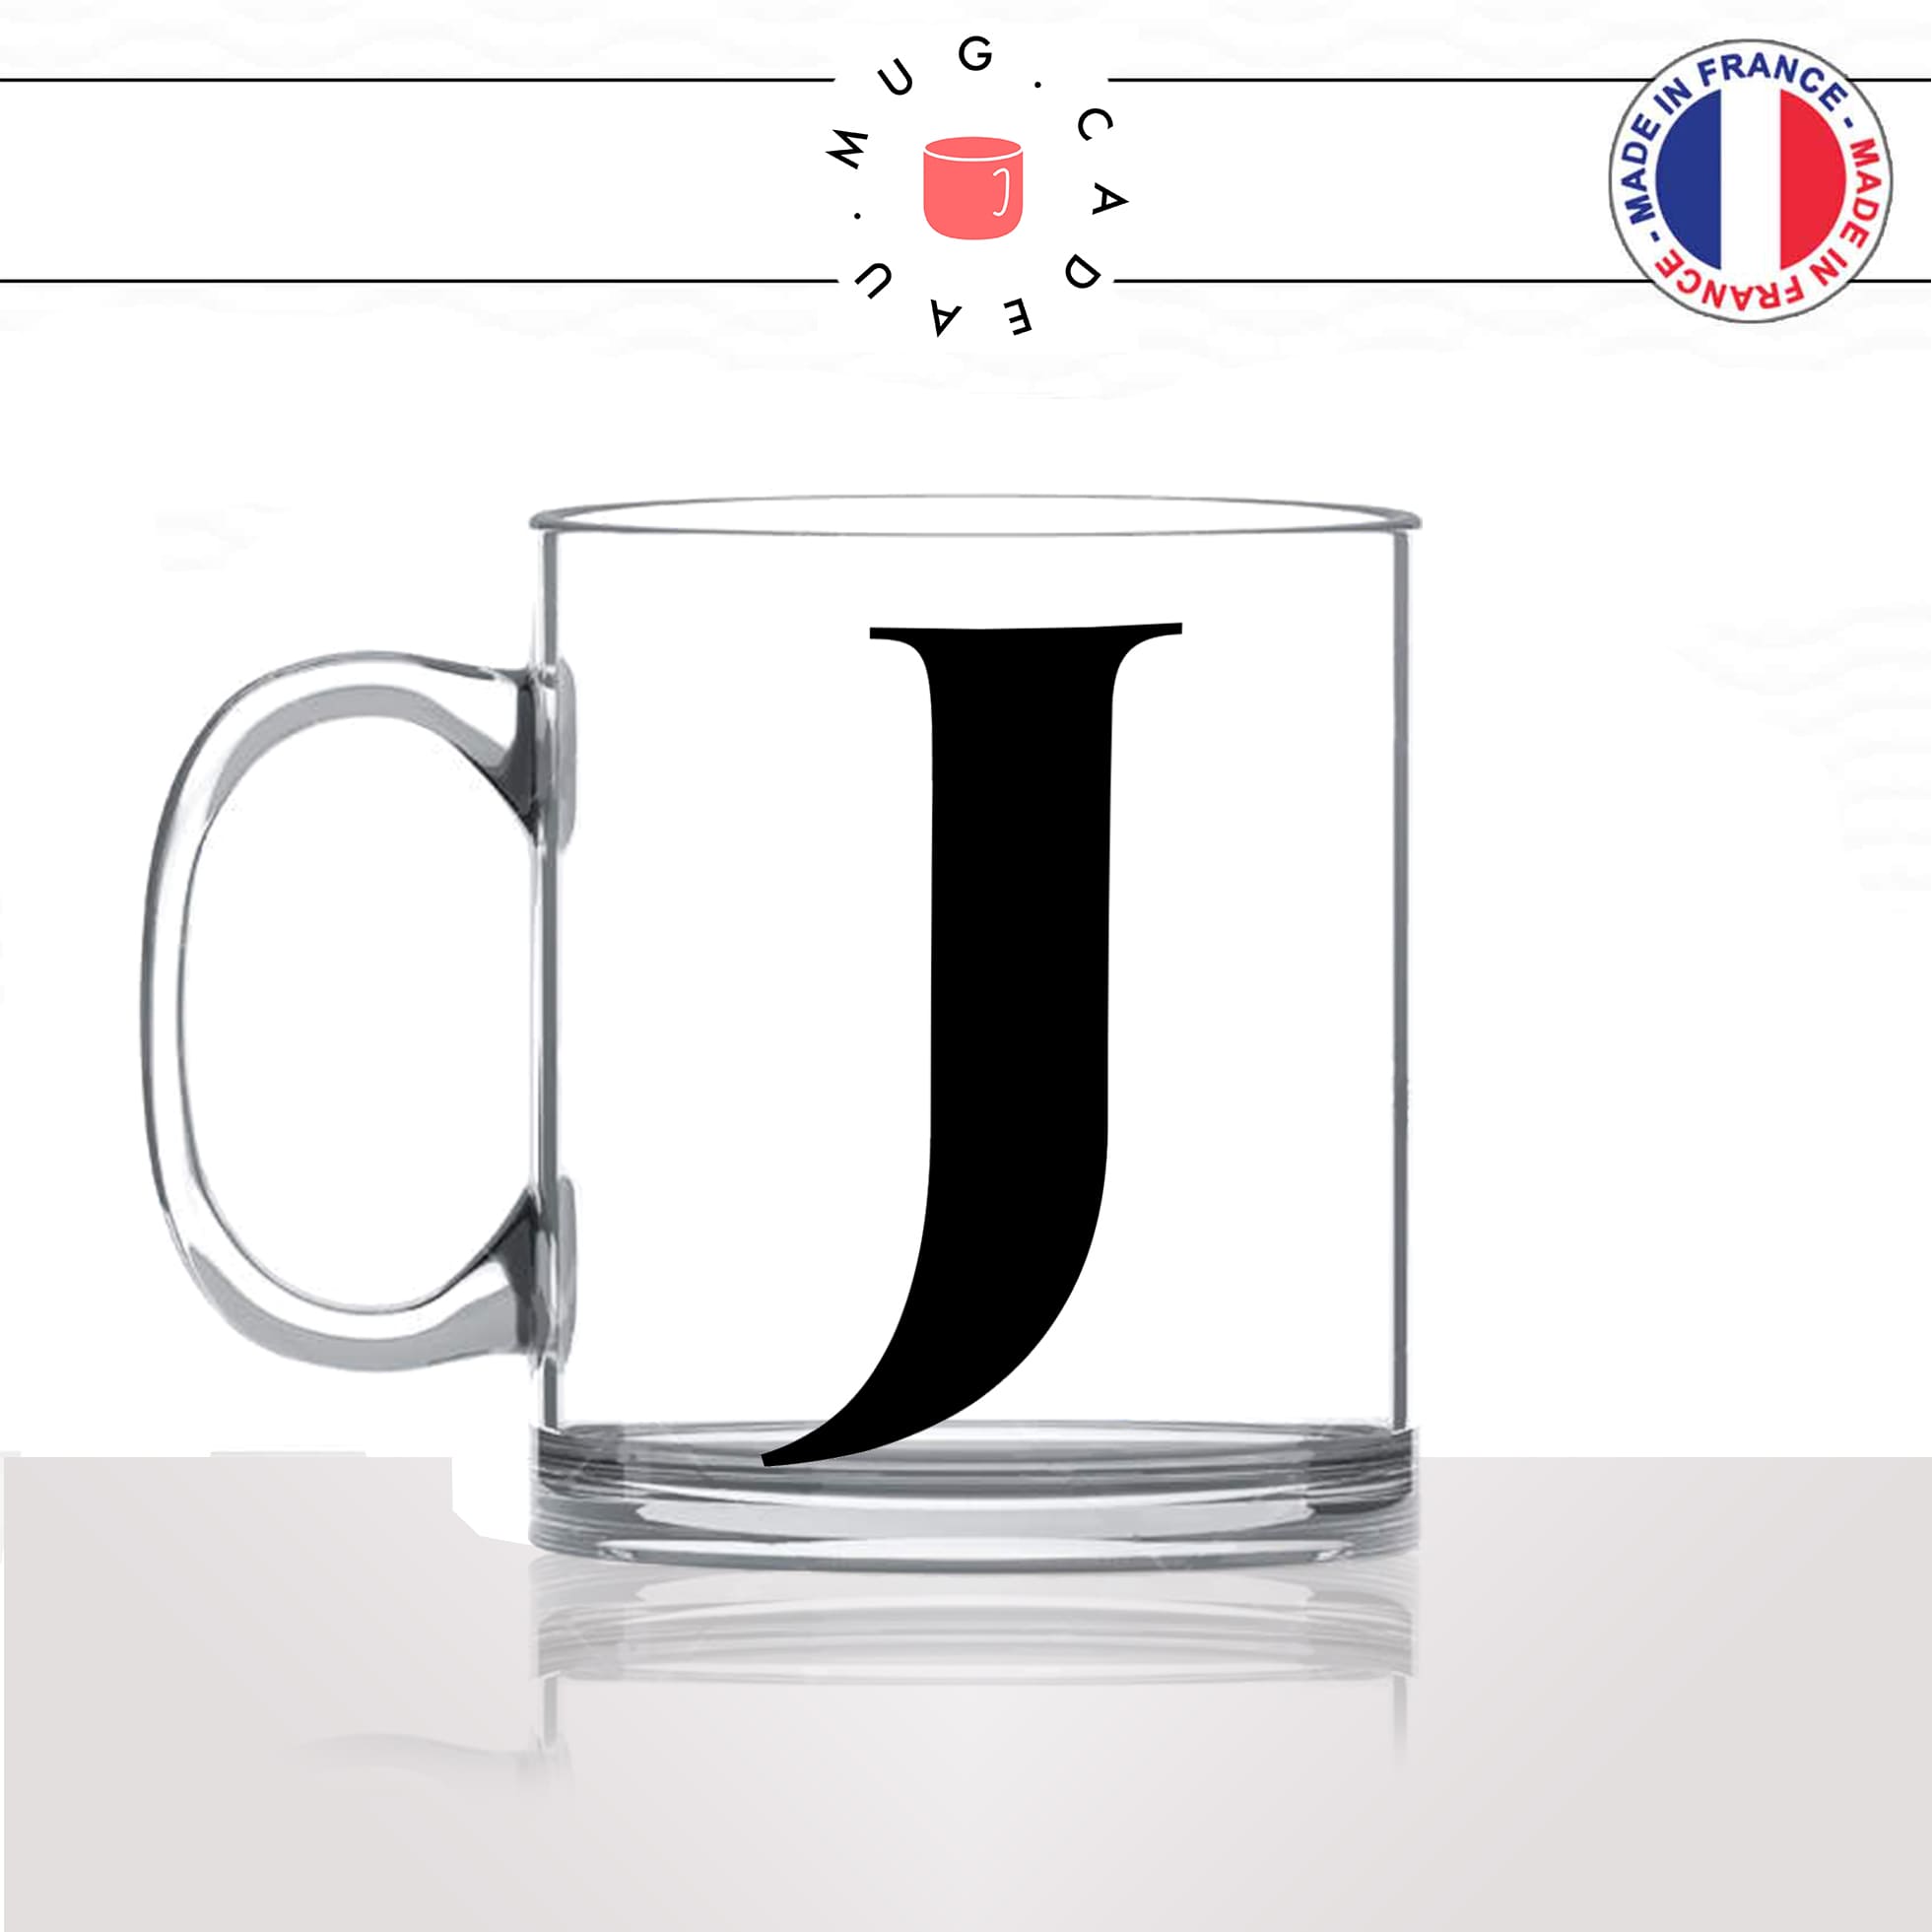 mug-tasse-en-verre-transparent-glass-initiale-J-jean-jeanne-jacques-jacky-majuscule-lettre-collegue-original-idée-cadeau-fun-cool-café-thé